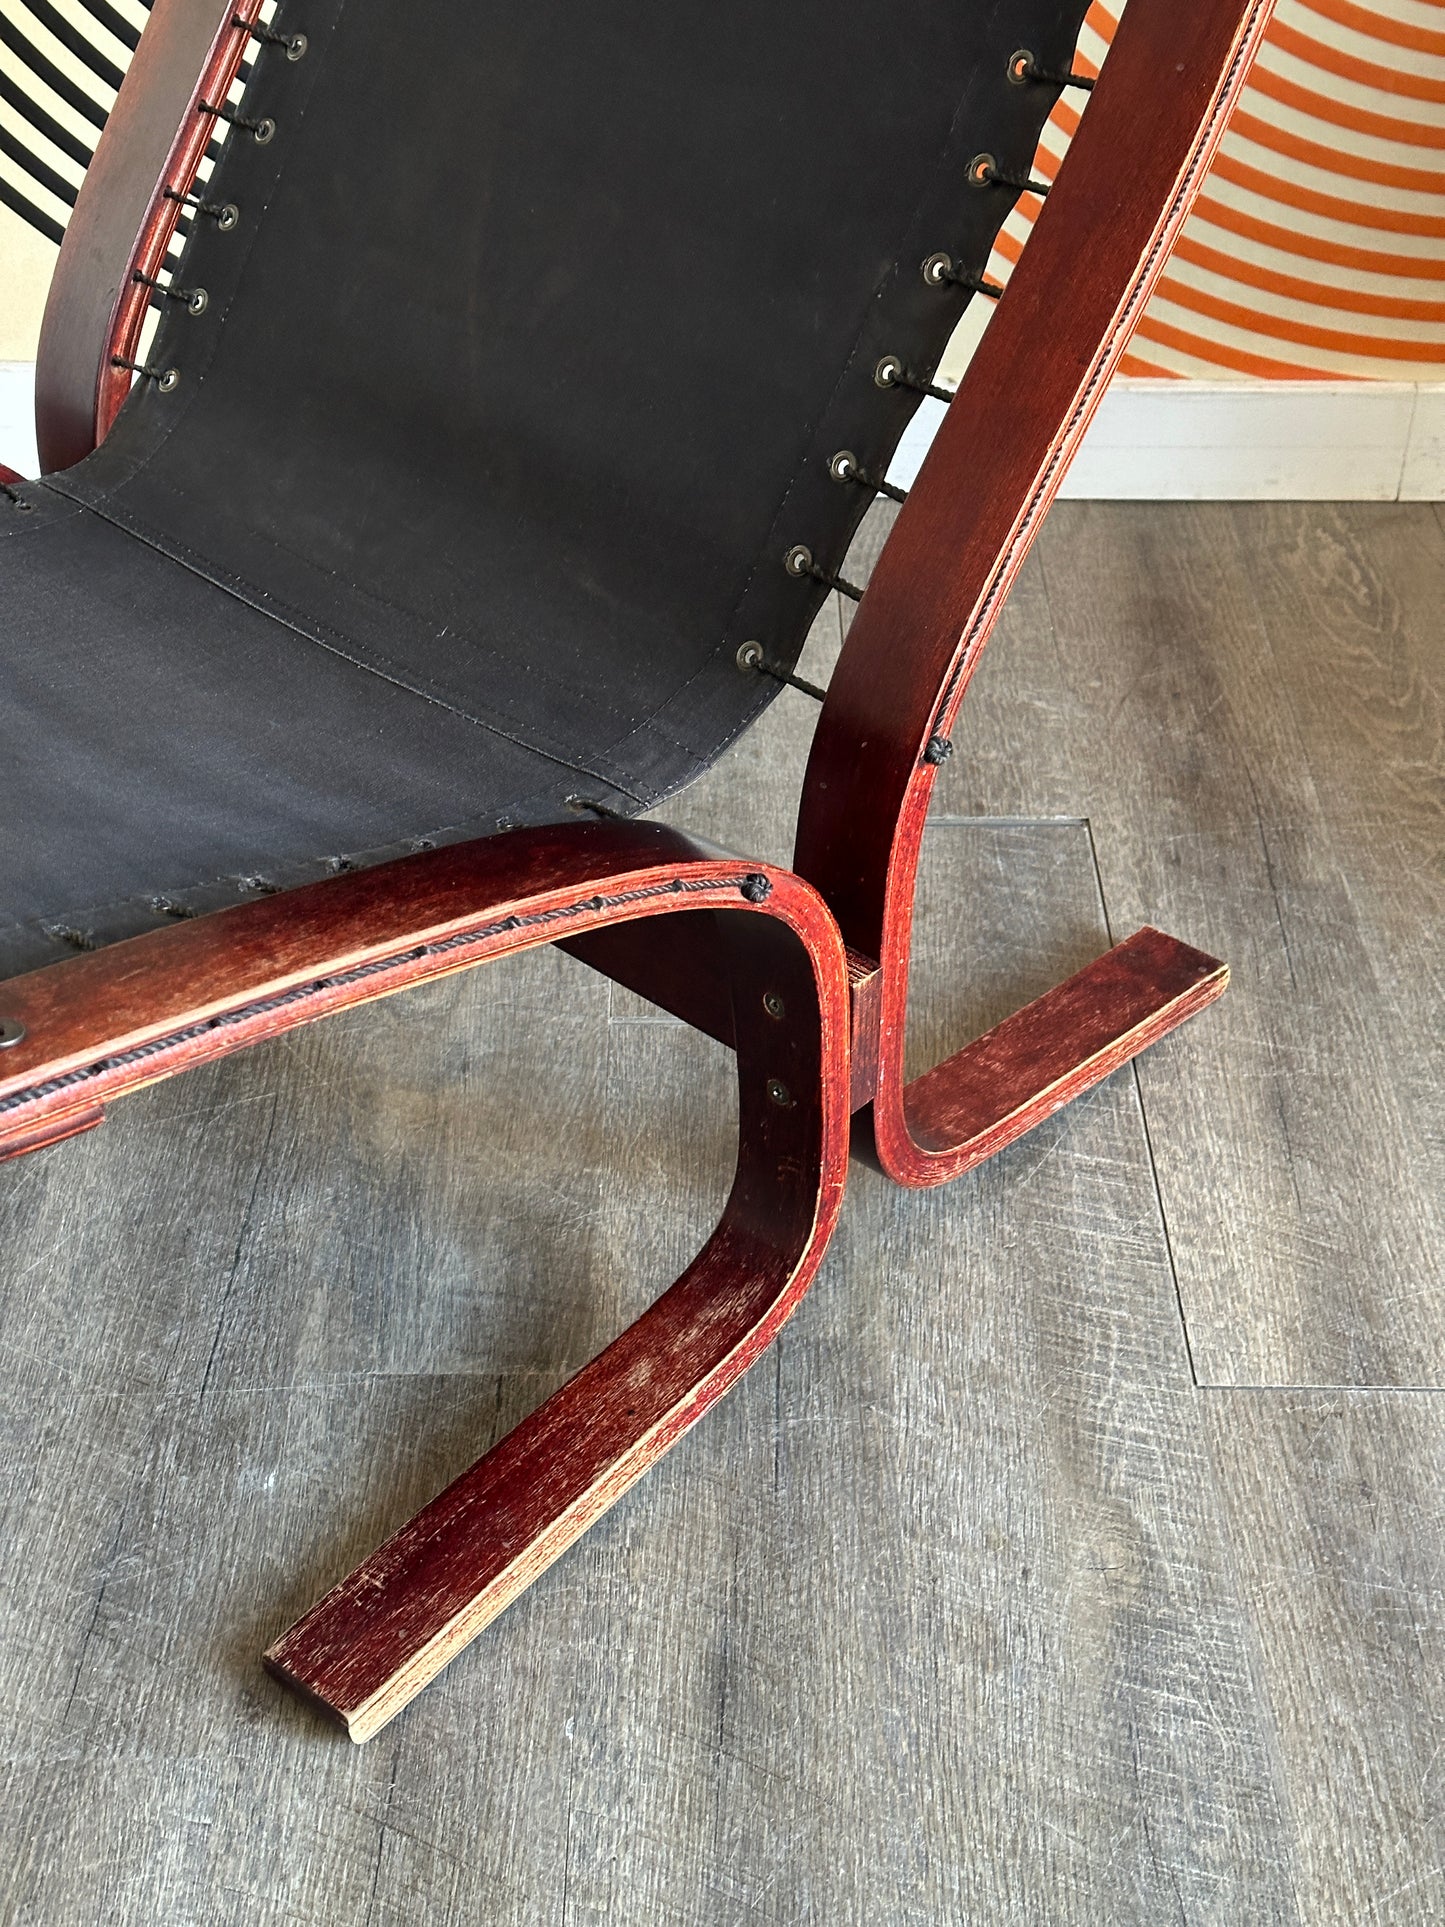 Vintage Black Leather Siesta Chair